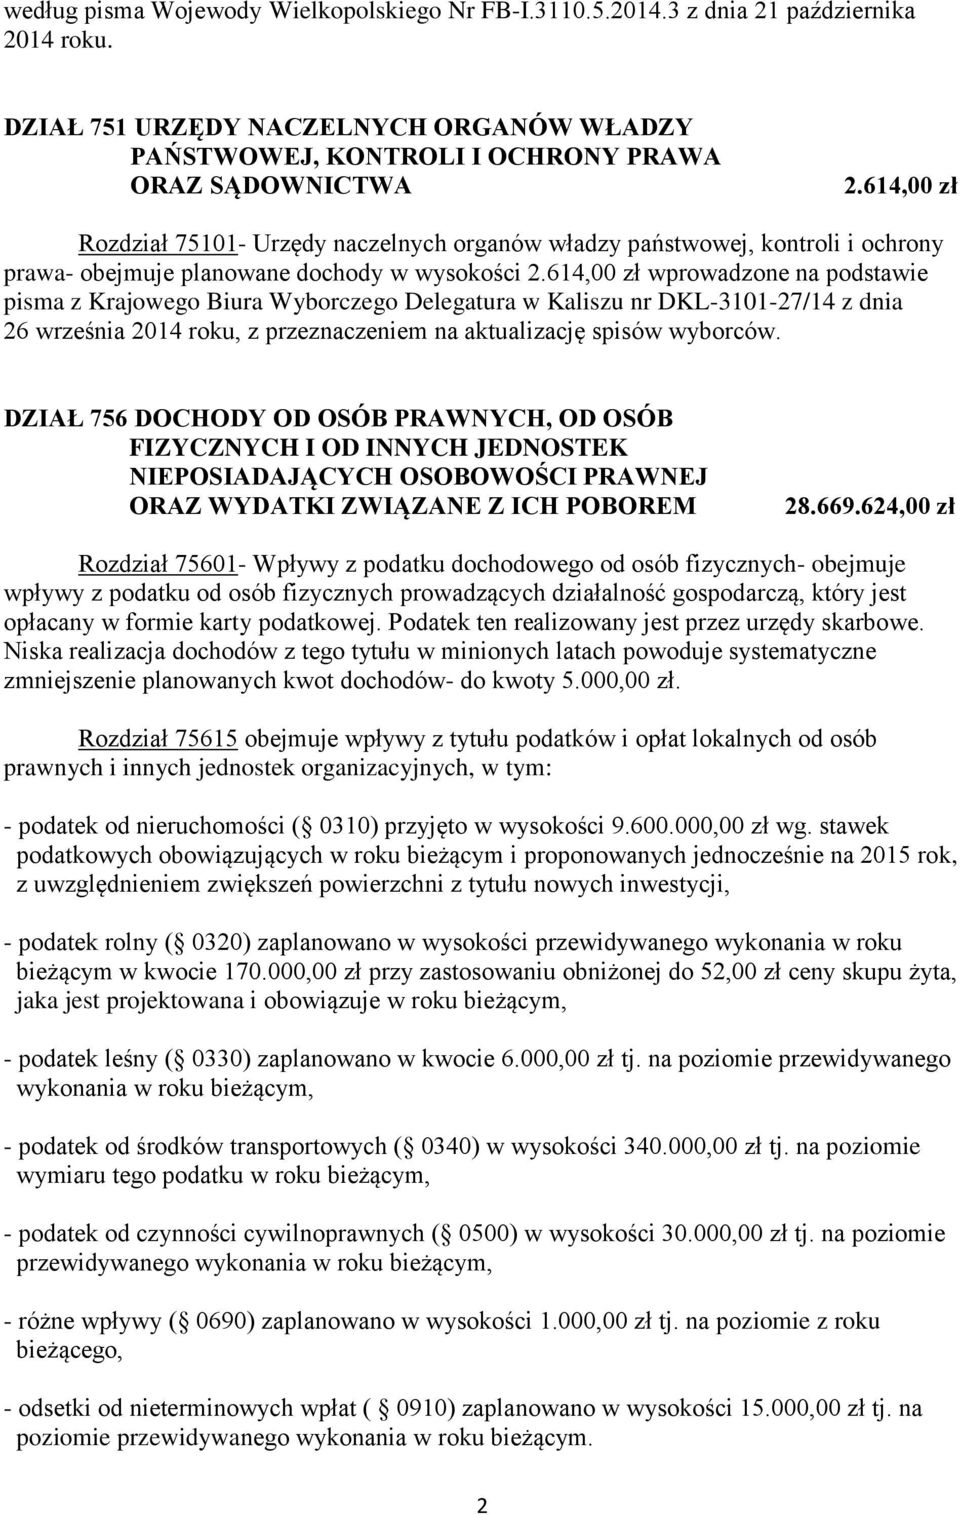 614,00 zł wprowadzone na podstawie pisma z Krajowego Biura Wyborczego Delegatura w Kaliszu nr DKL-3101-27/14 z dnia 26 września 2014 roku, z przeznaczeniem na aktualizację spisów wyborców.